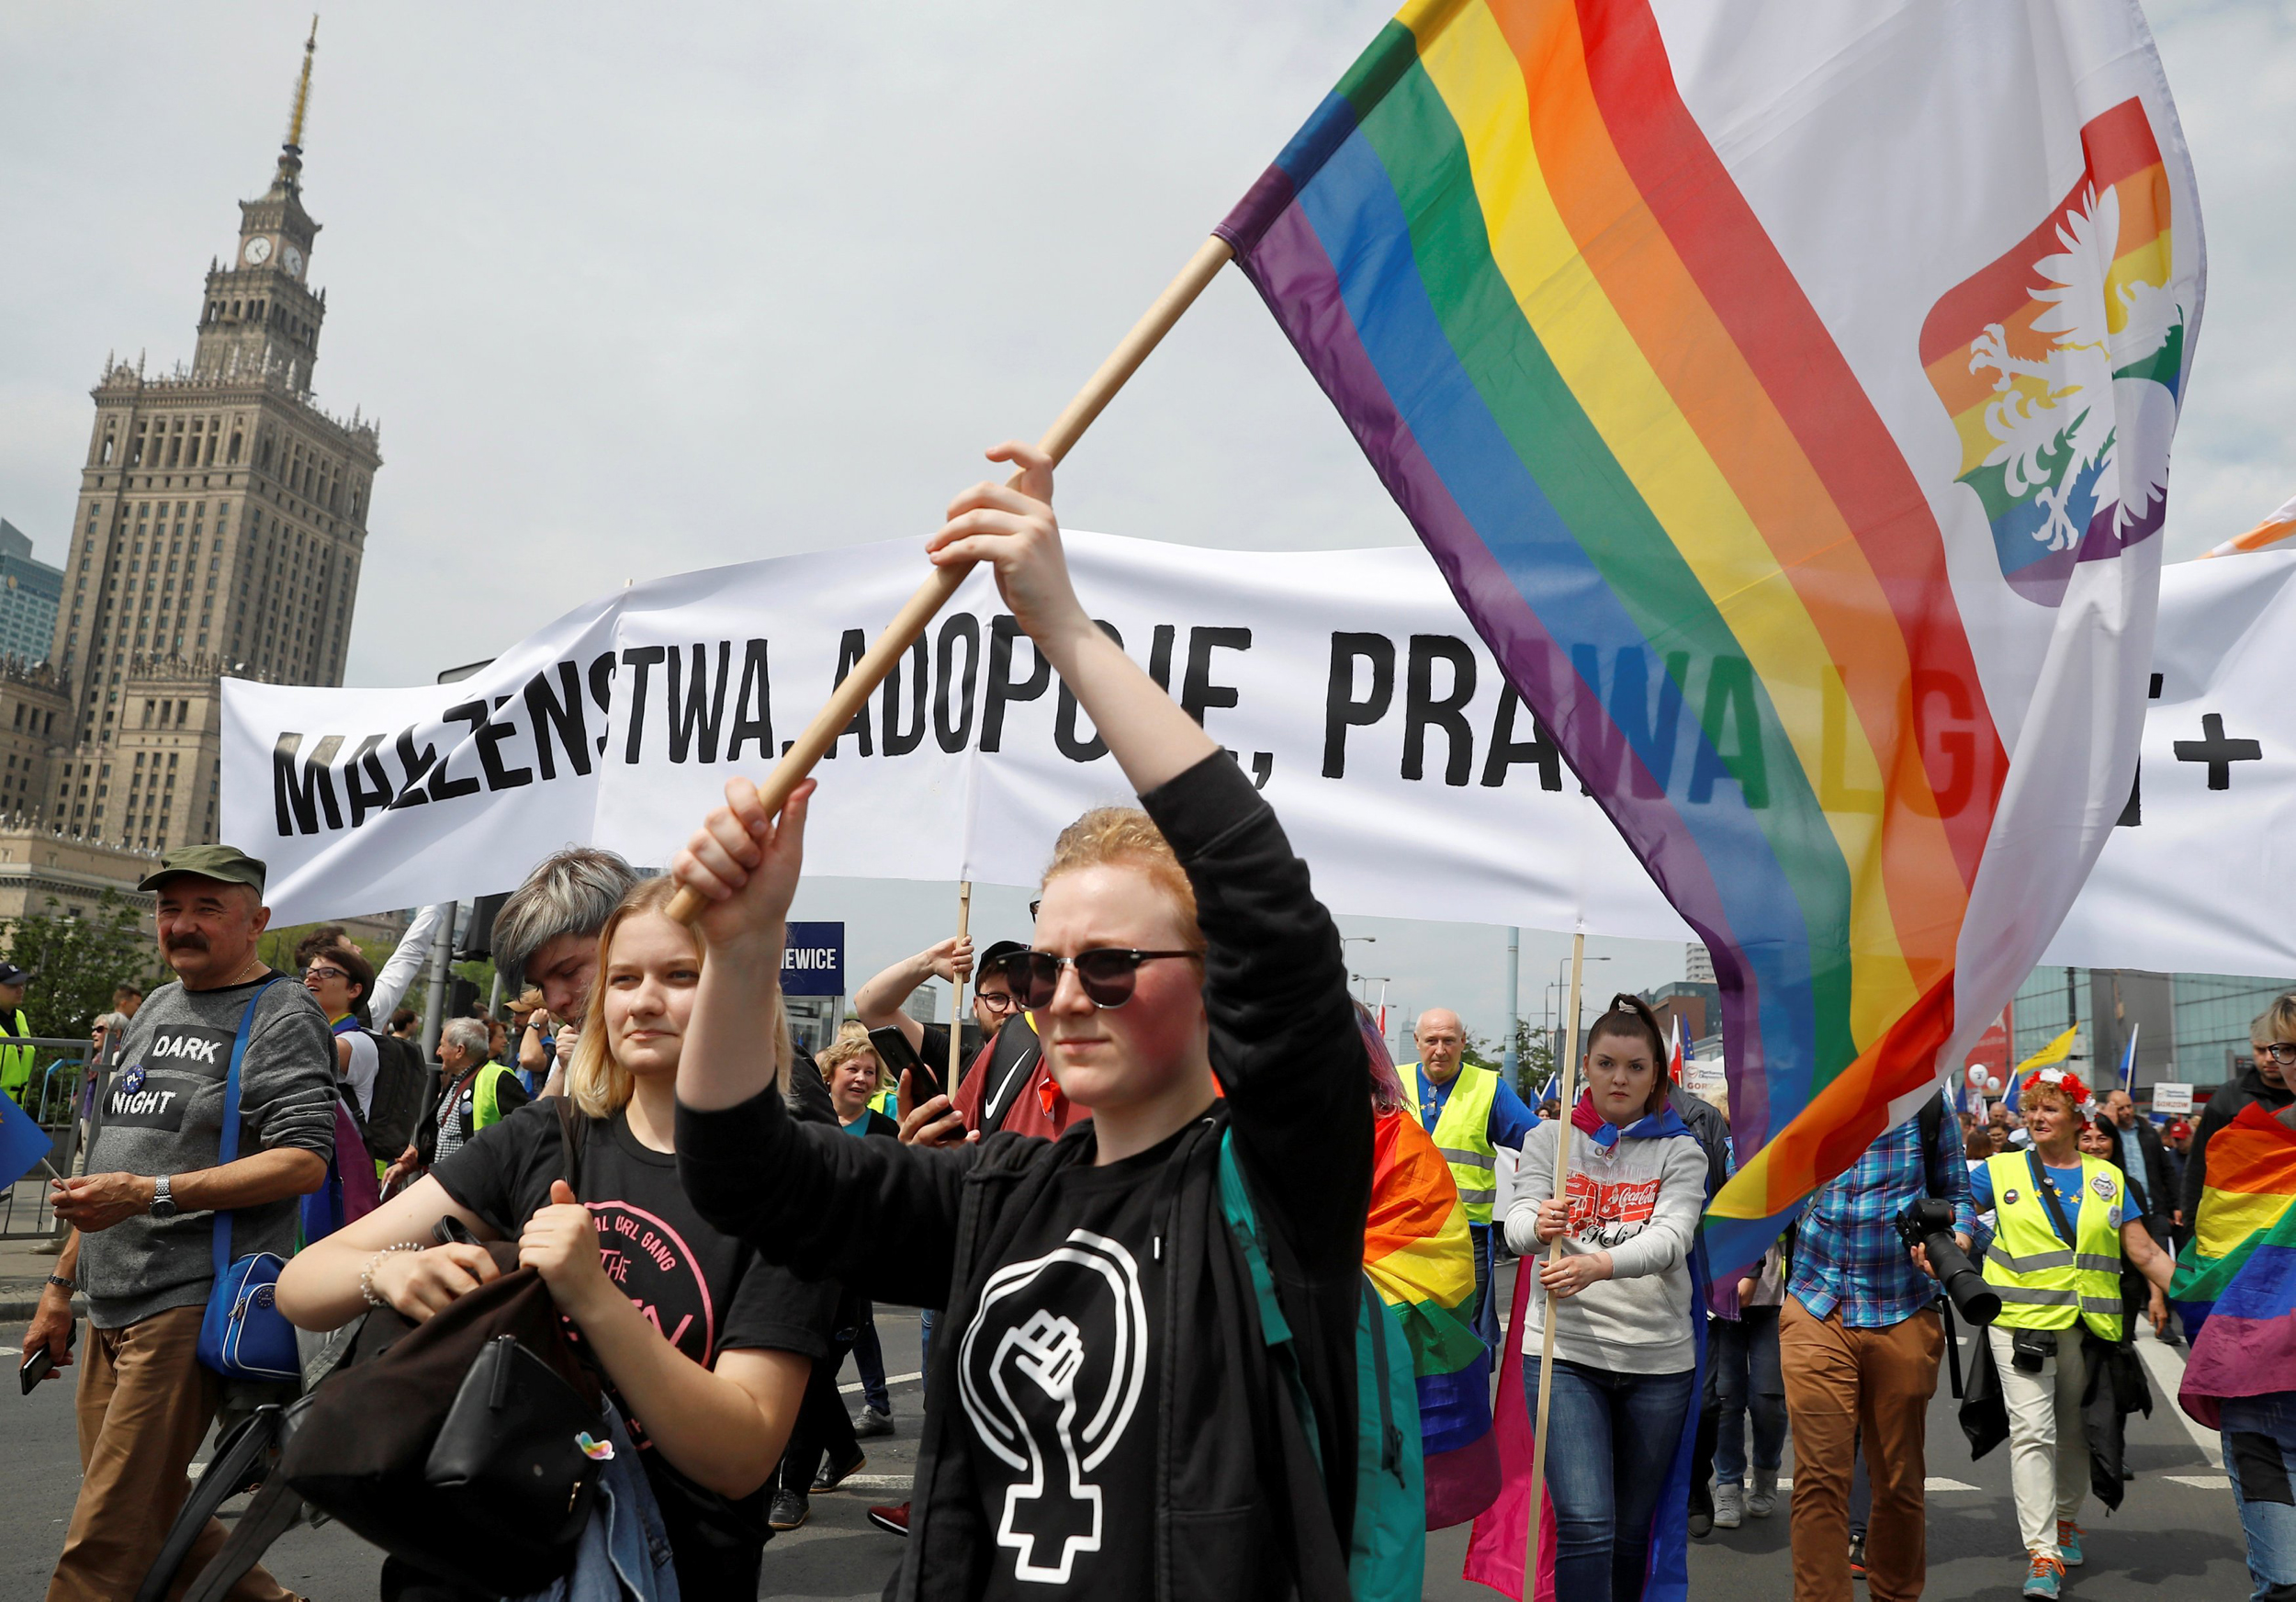 Βαρσοβία: Έκαψαν σημαίες των LGBTI – Μεγάλη αντισυγκέντρωση κατά των ομοφυλόφιλων